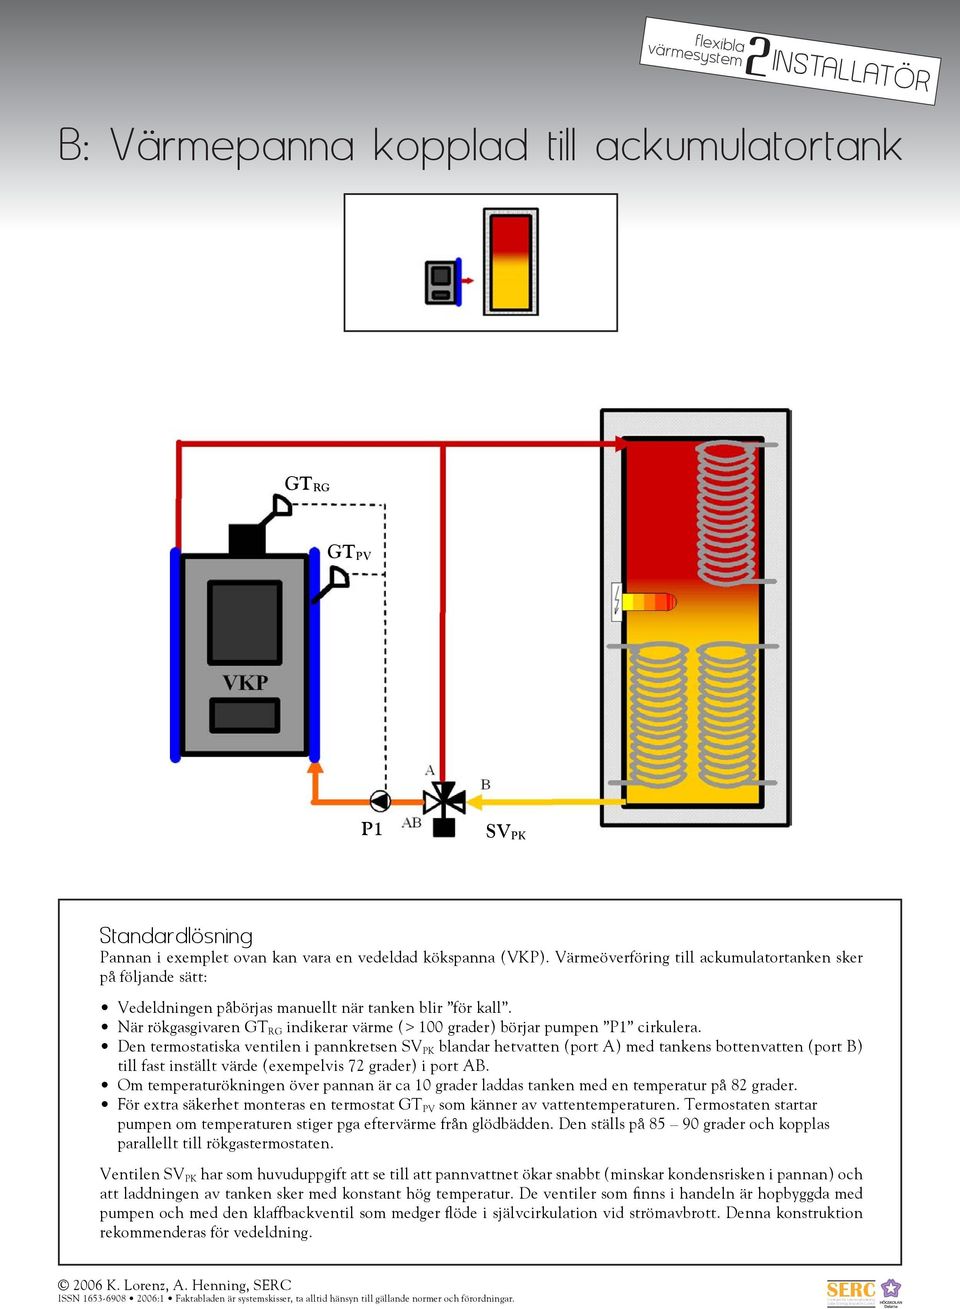 Den termostatiska ventilen i pannkretsen SV PK blandar hetvatten (port A) med tankens bottenvatten (port B) till fast inställt värde (exempelvis 7 grader) i port AB.